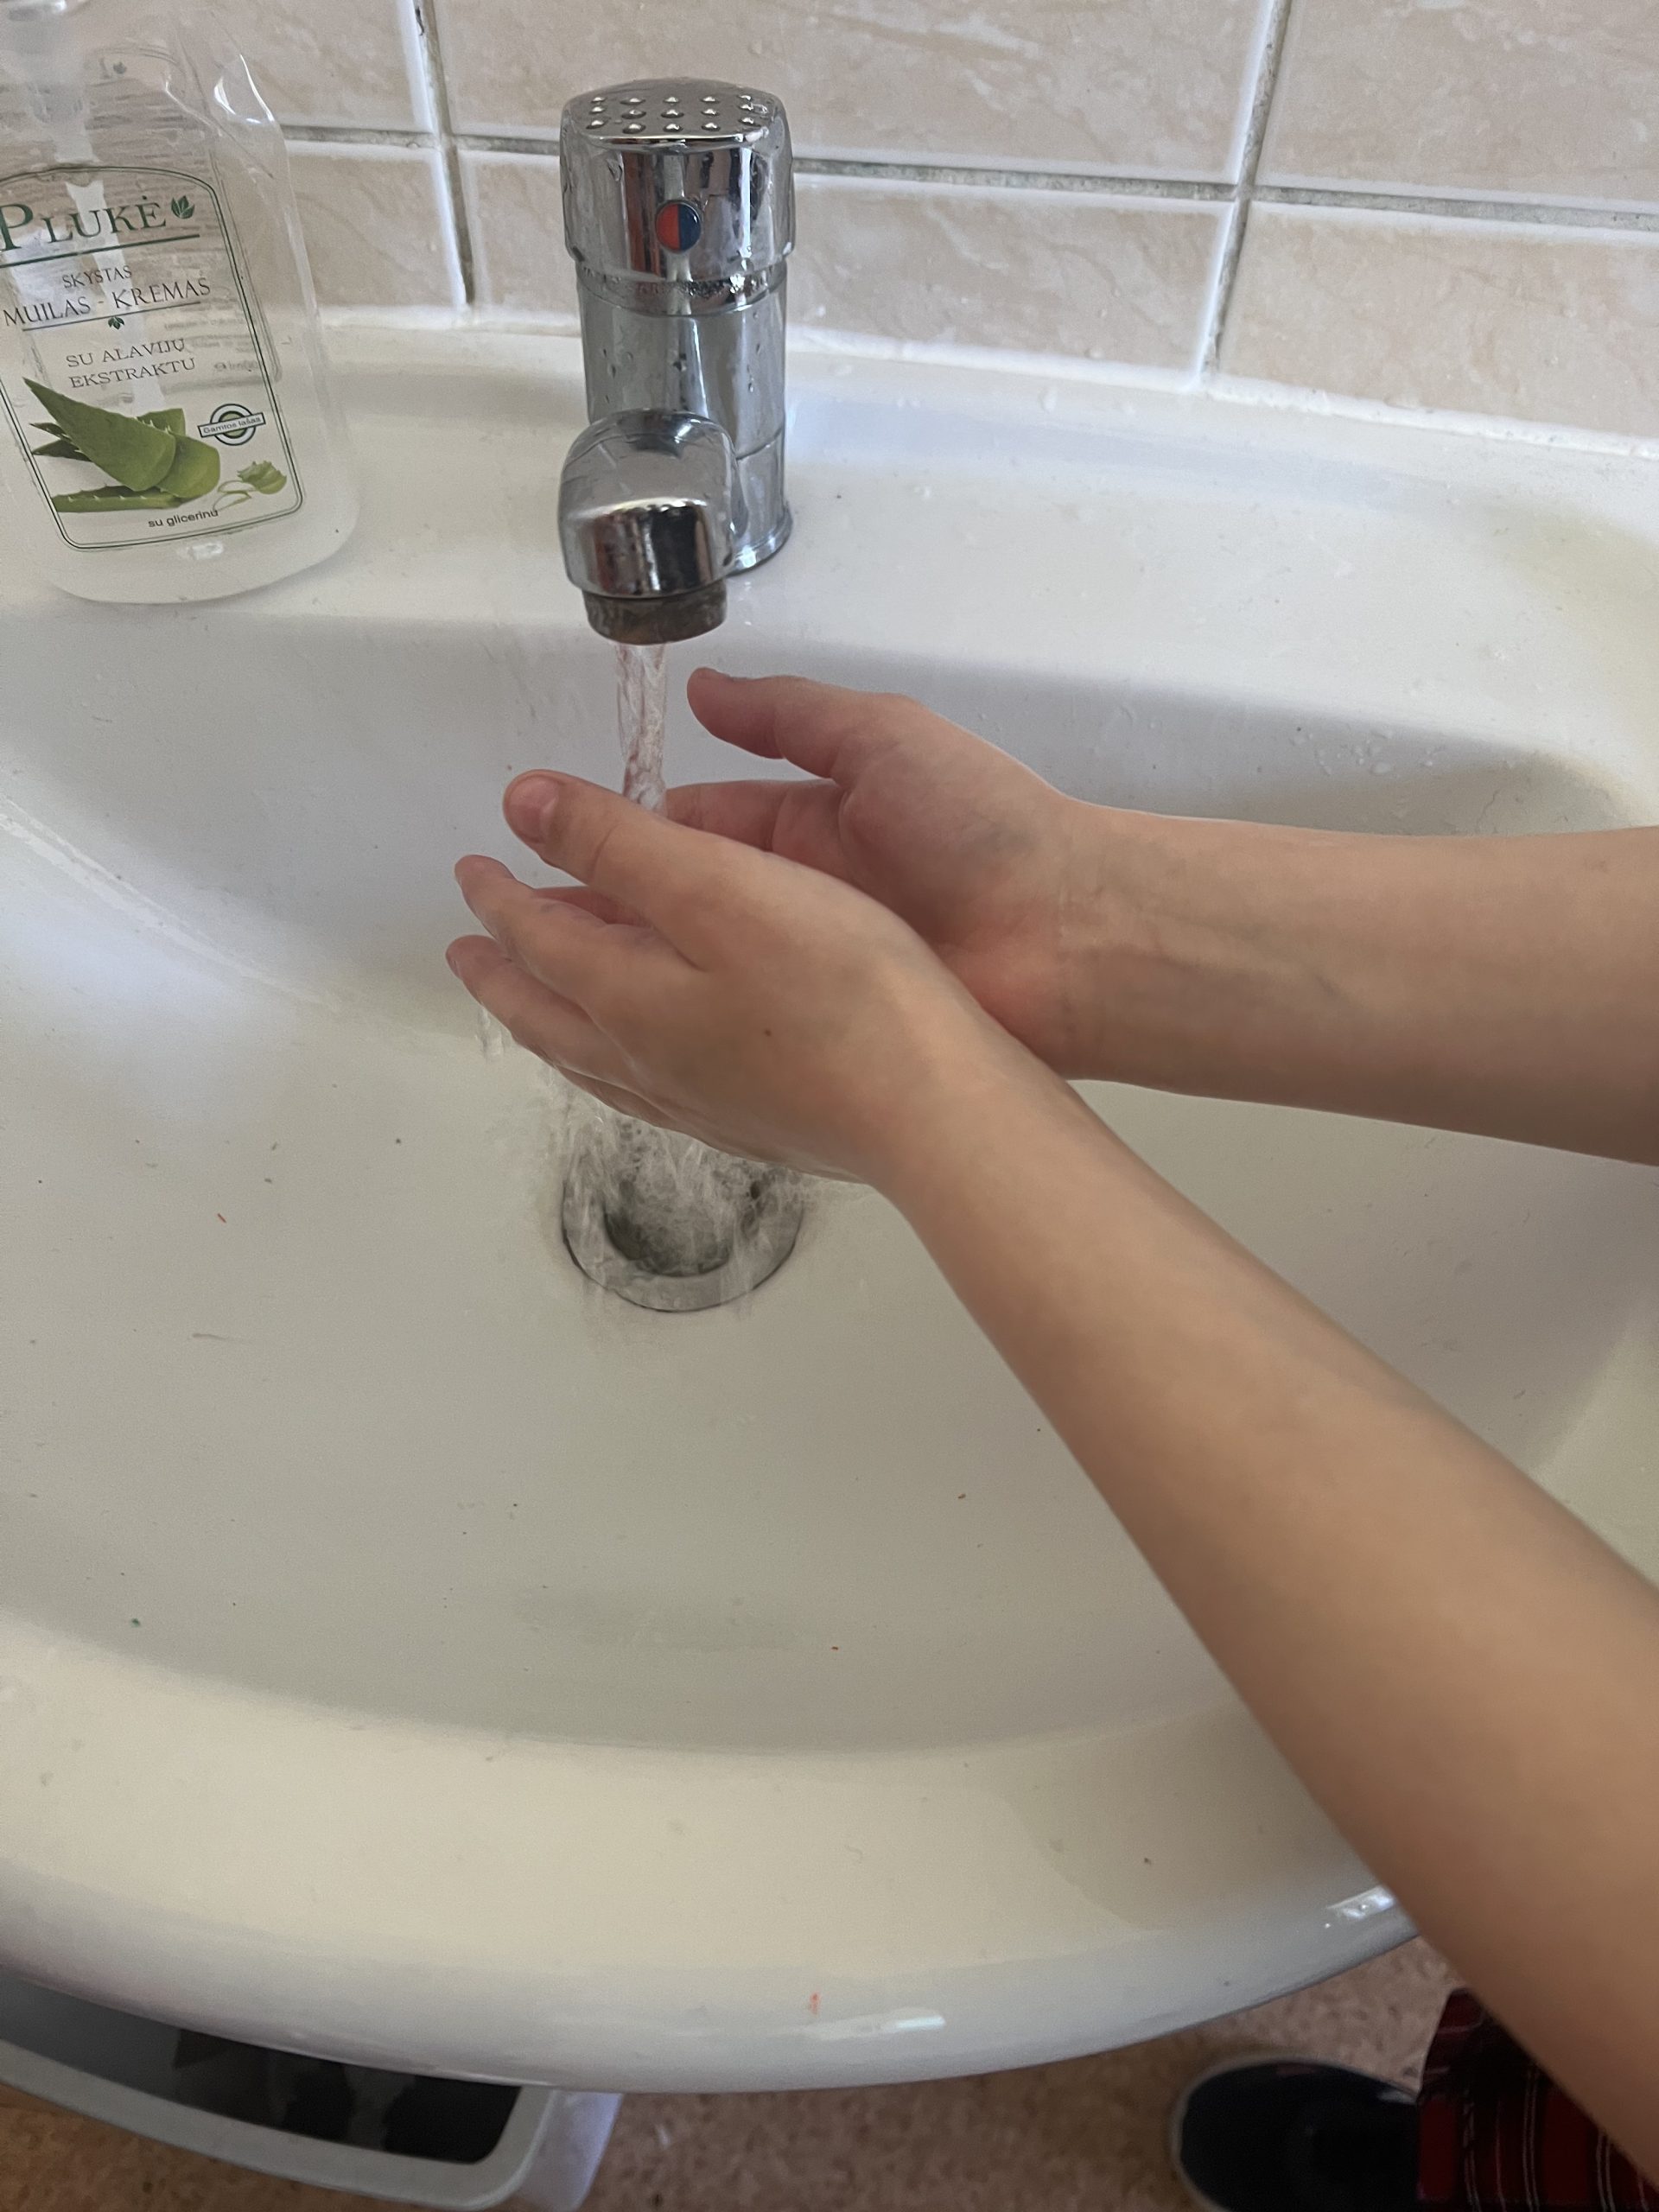 pasauline-ranku-higienos-diena